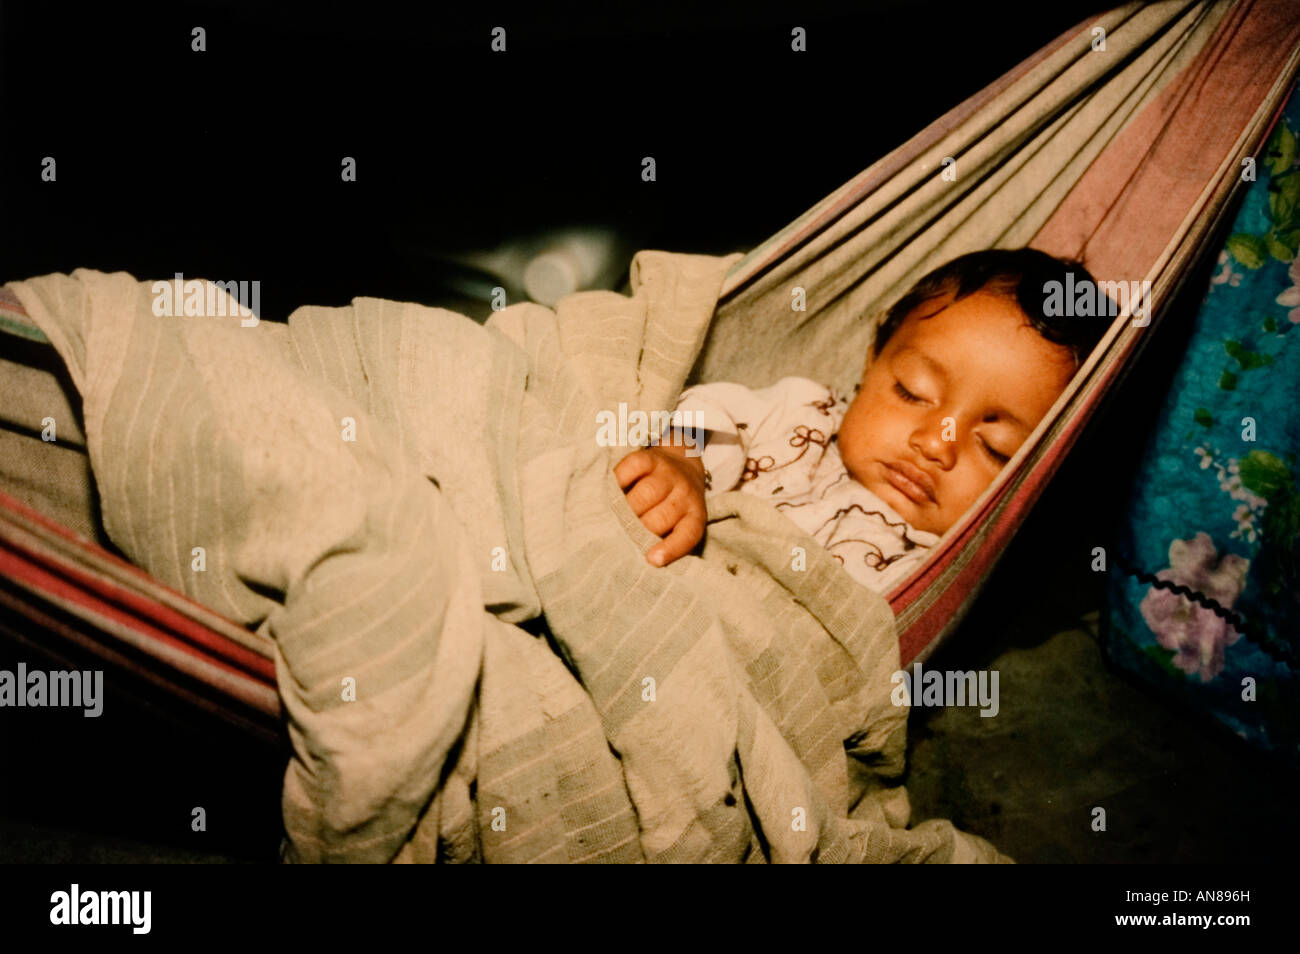 Ein indische Baby Kind aus Rajestan Indien ist in einer Hängematte schlafen  Stockfotografie - Alamy